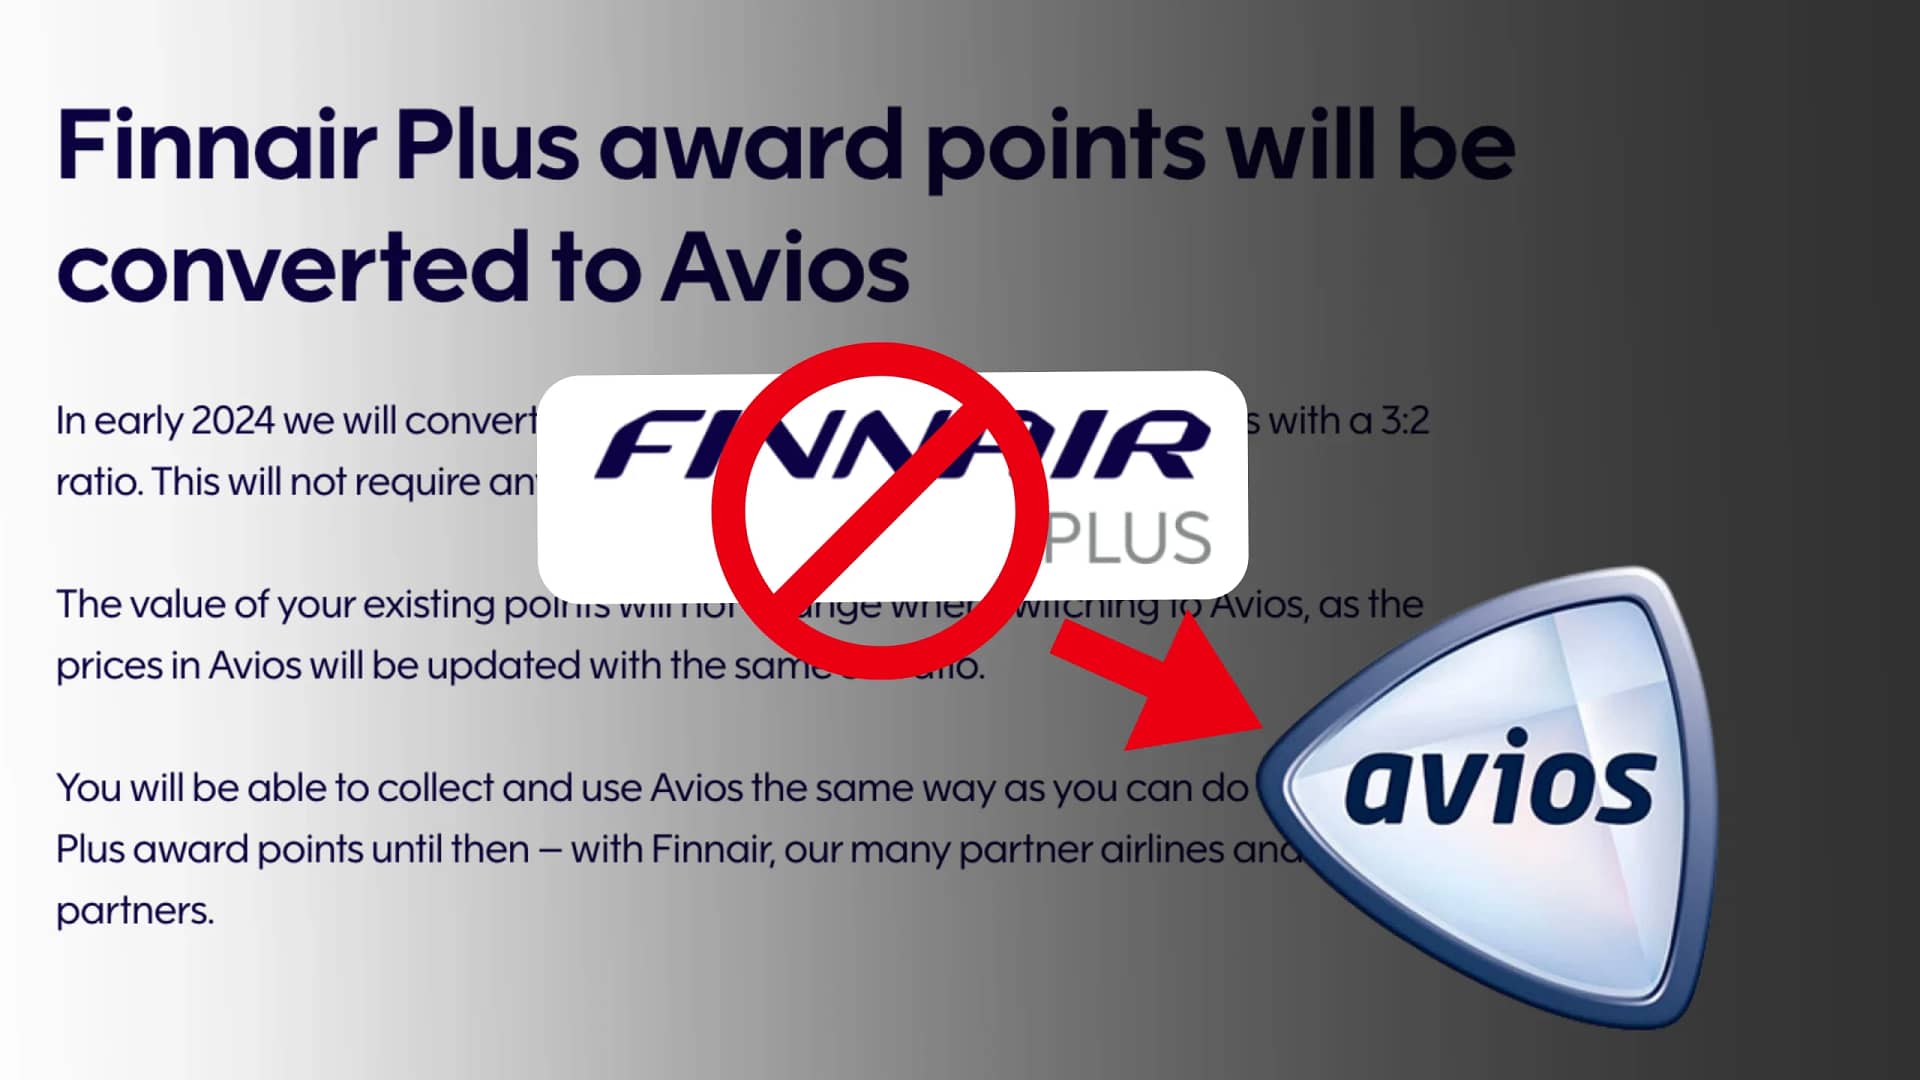 Finnair Adopts Avios in 2024. How to convert Finnair Plus points?